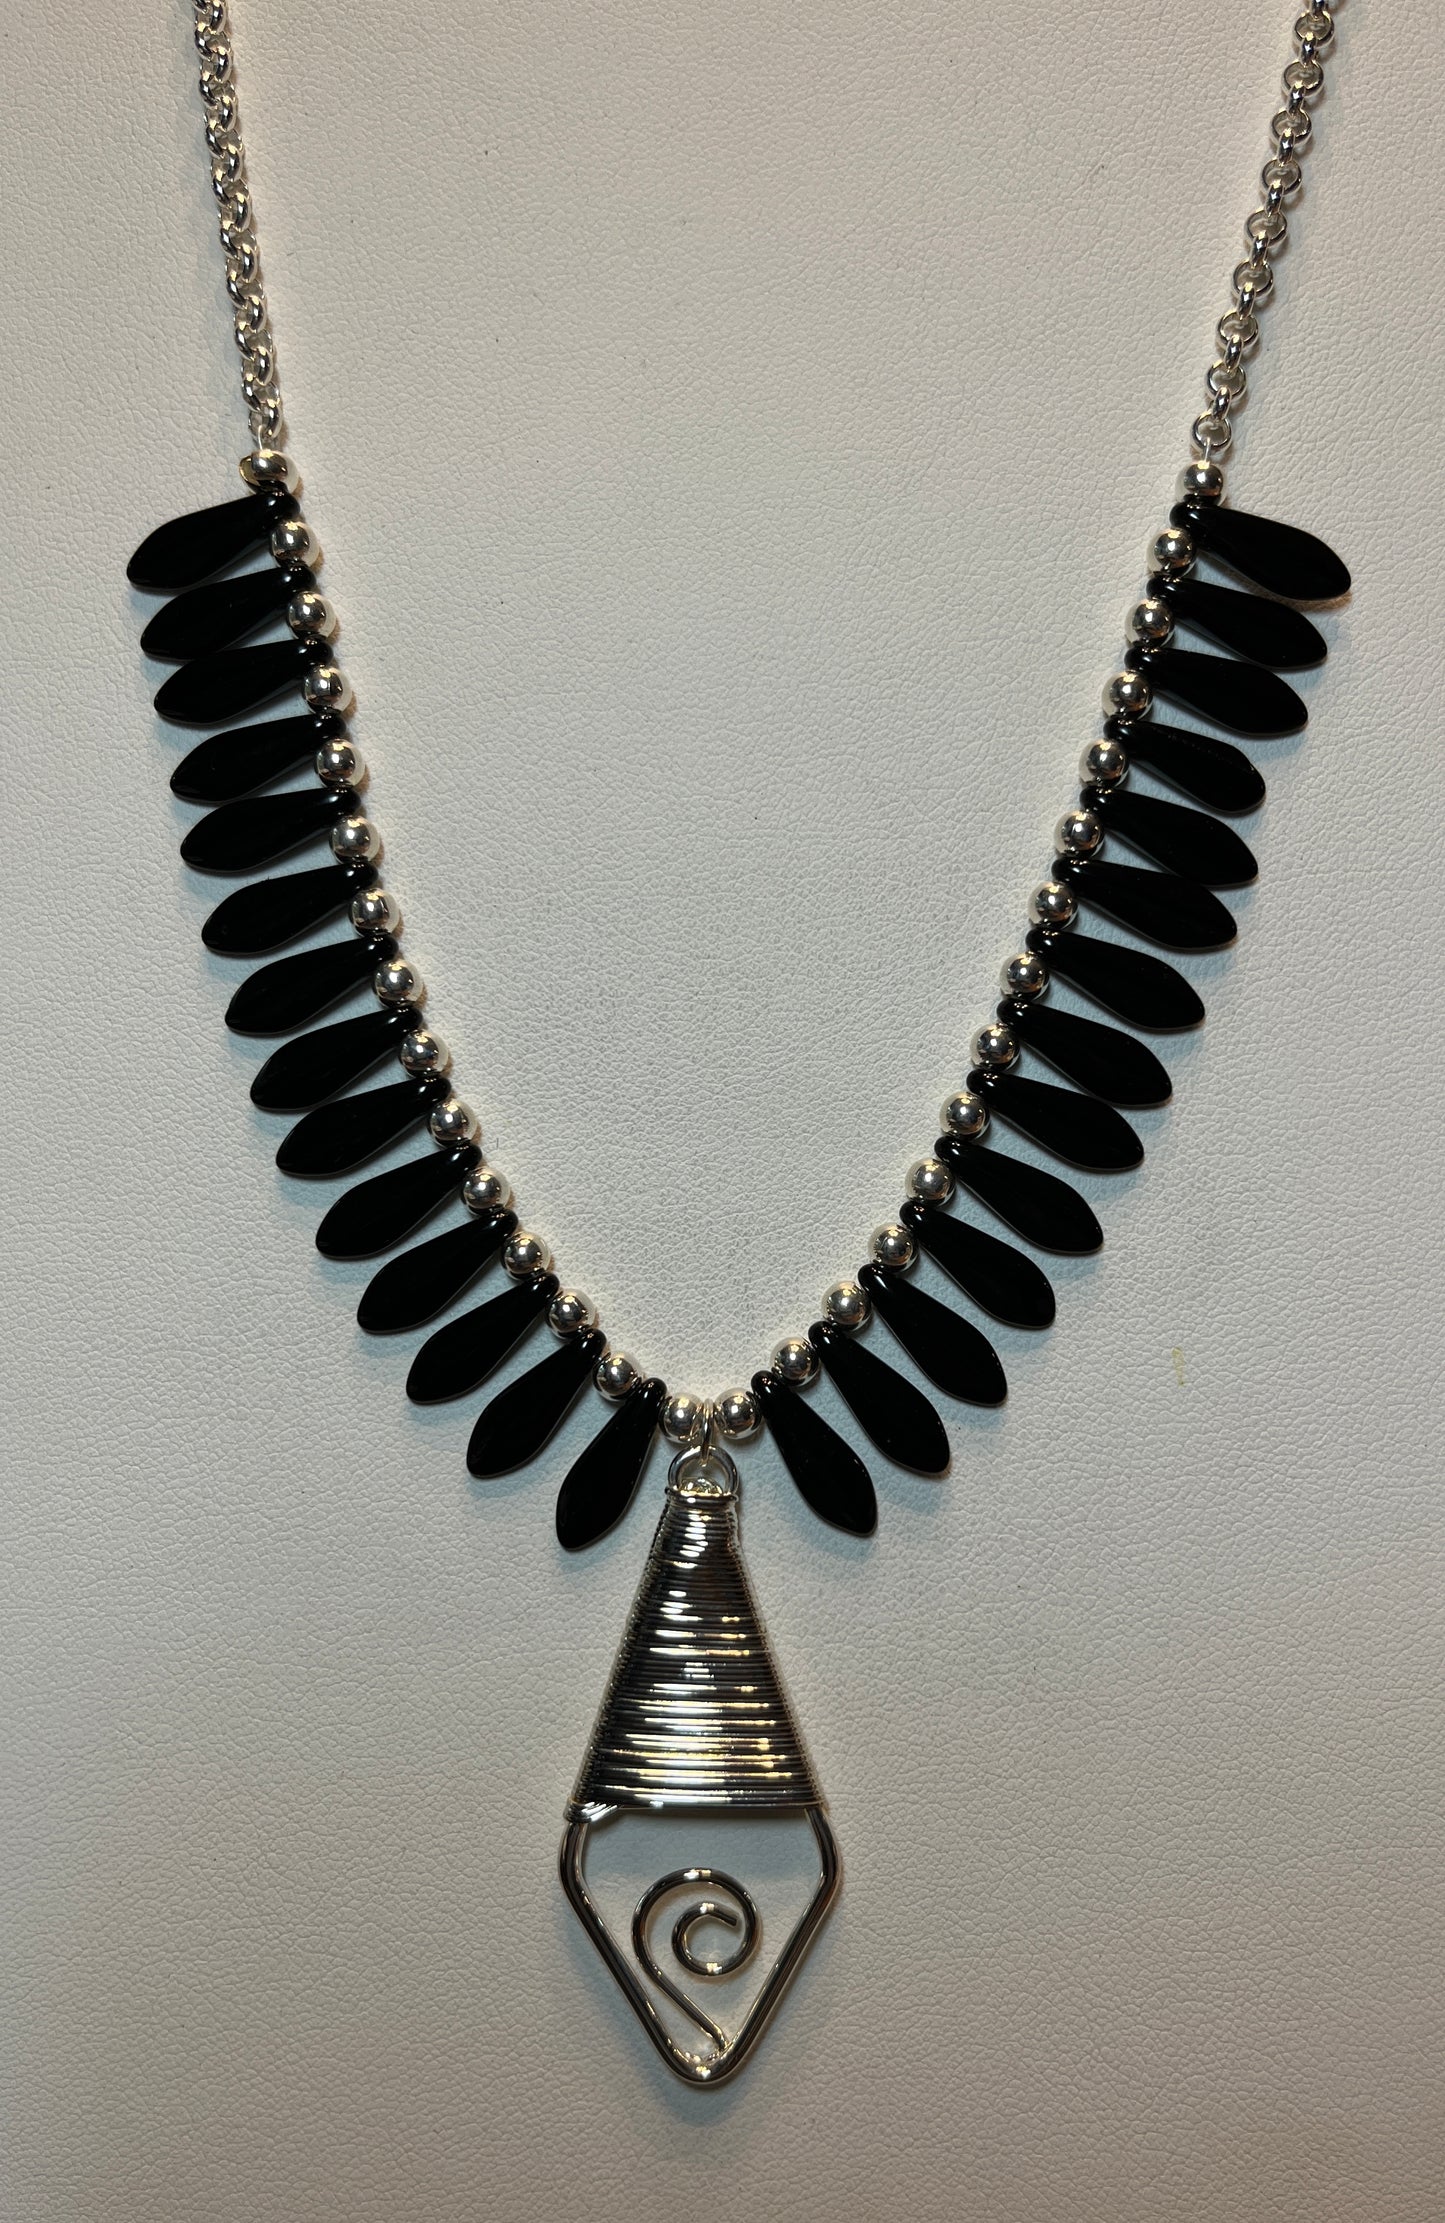 Black & Silver necklace